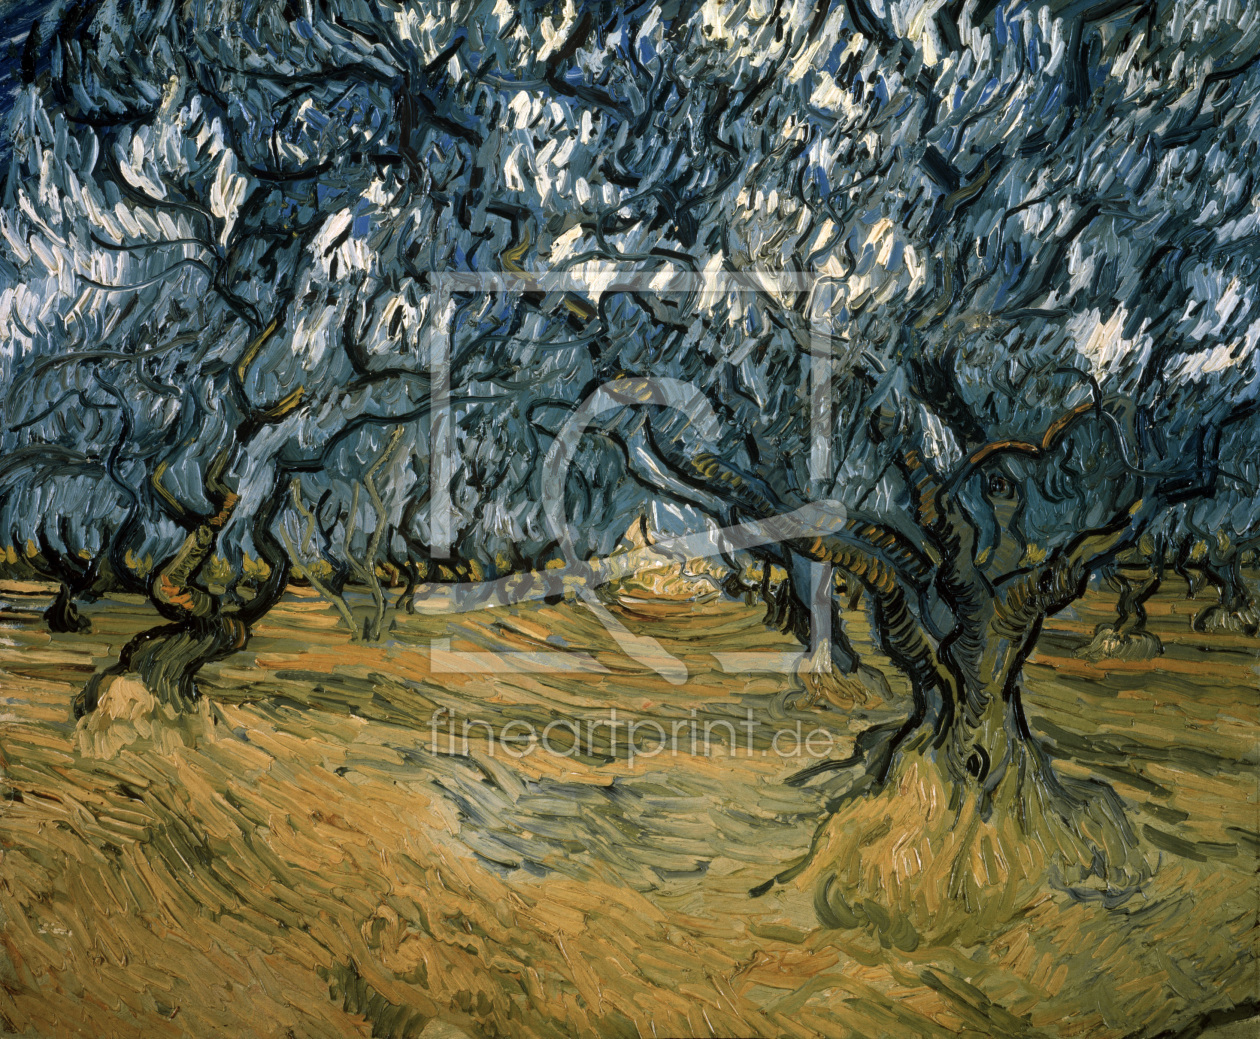 Bild-Nr.: 30003278 van Gogh / Olive Trees / 1889 erstellt von van Gogh, Vincent